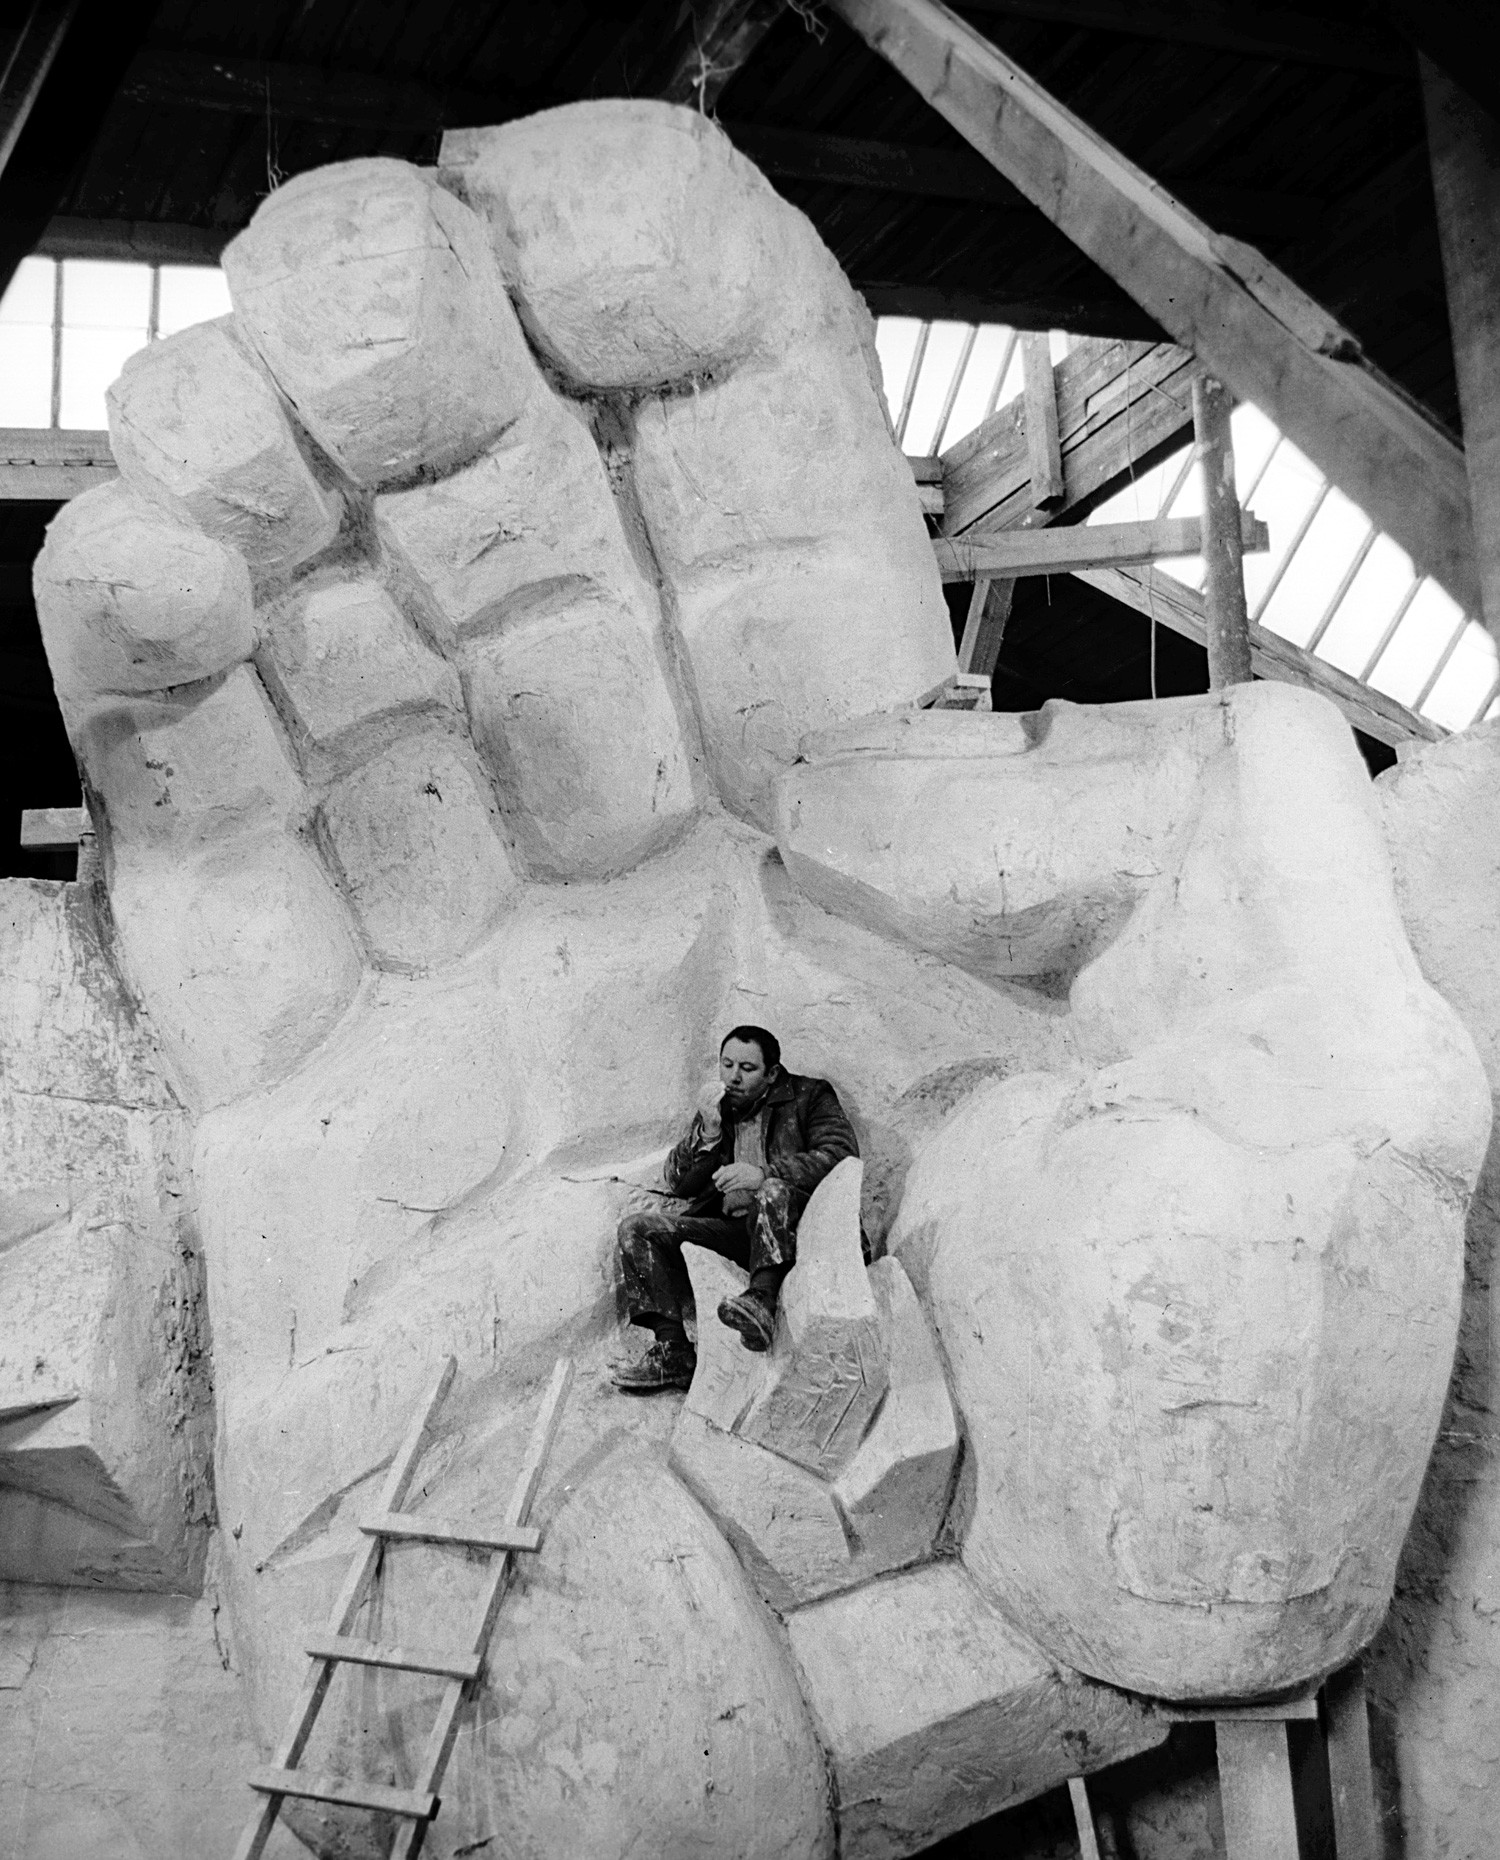 Der talentierte russisch-amerikanische Bildhauer Ernst Neiswestnyj unterhielt sehr wechselhafte Beziehungen zur sowjetischen Macht. Chruschtschow nannte seine Werke gar „degenerierte Kunst“. 1976 verließ er die UdSSR, nannte dies jedoch stets eine persönliche Tragödie.